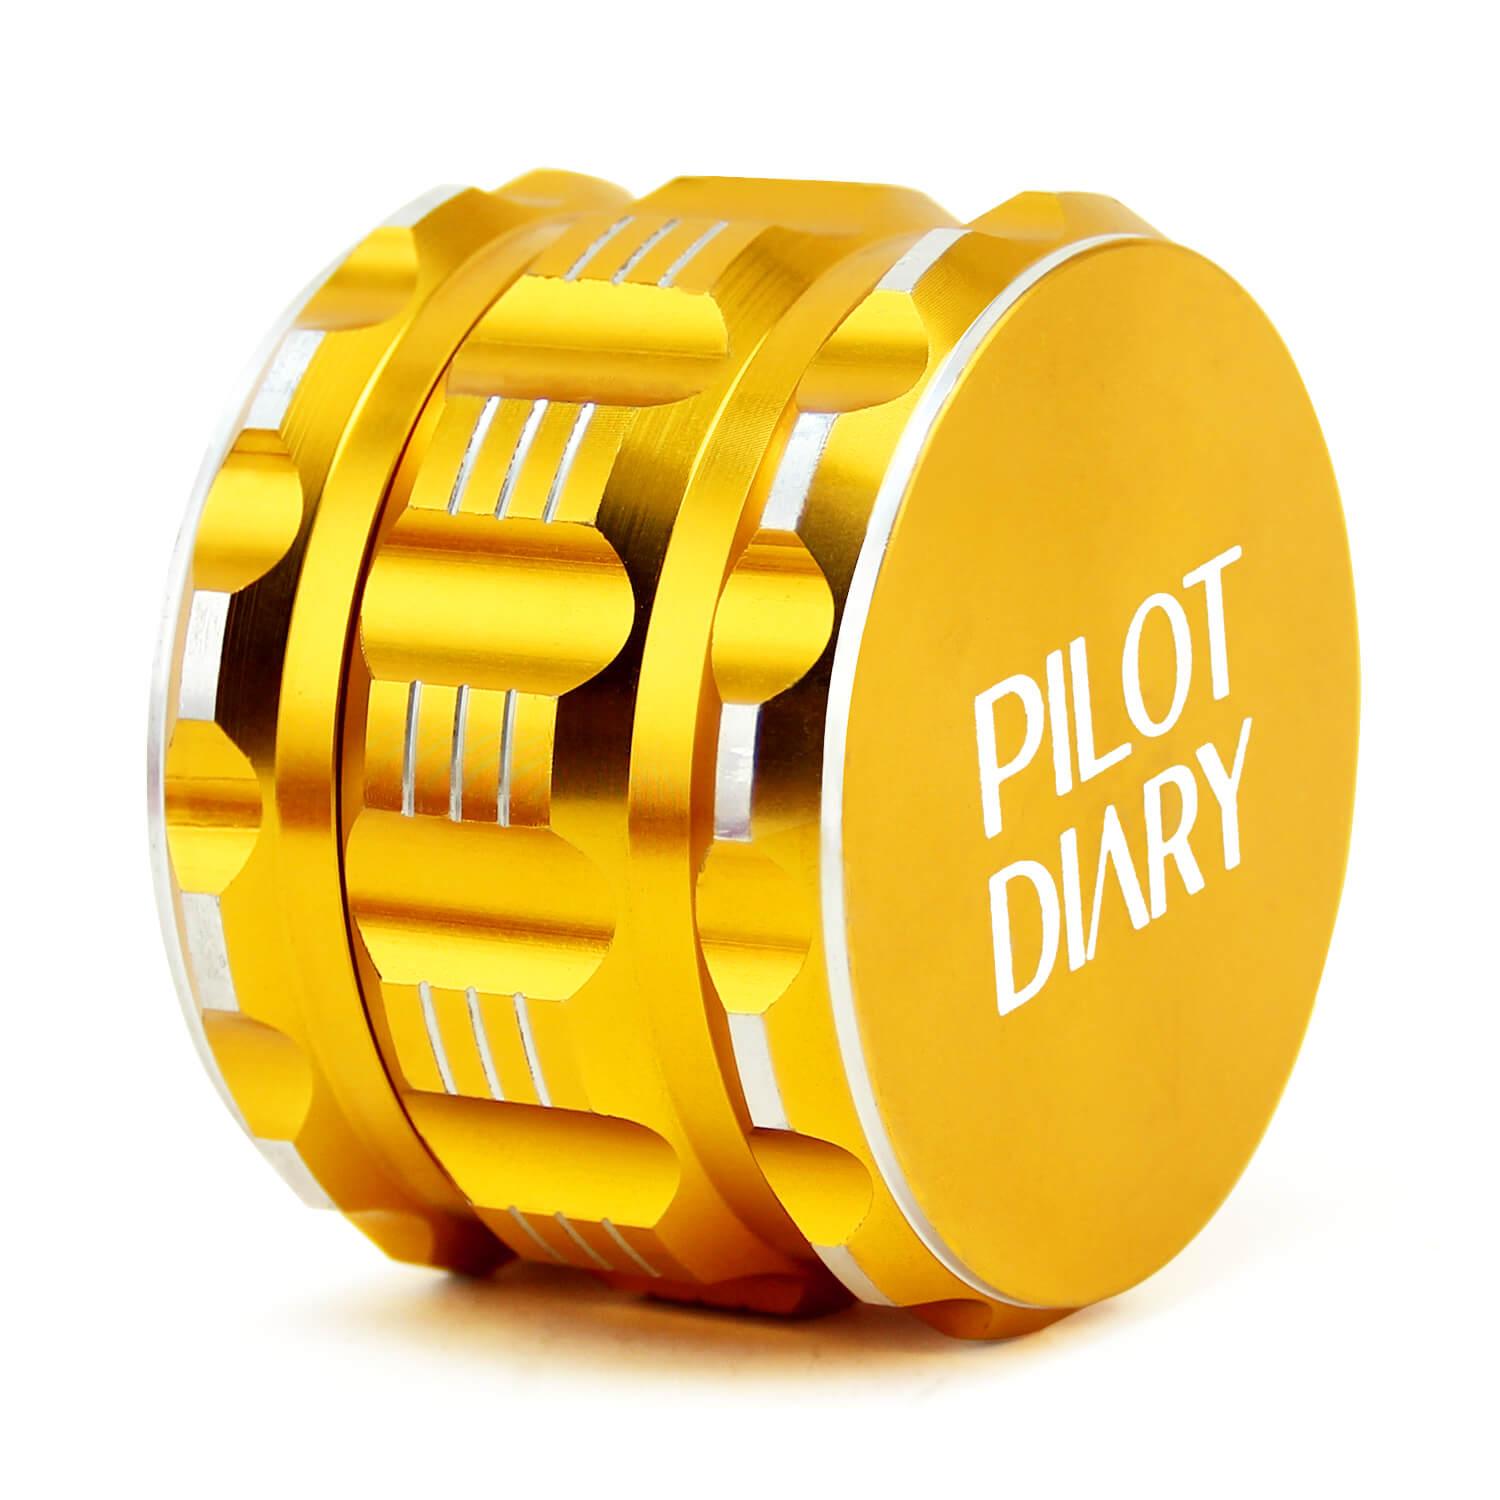 Gold Grinder 4pcs - PILOT DIARY